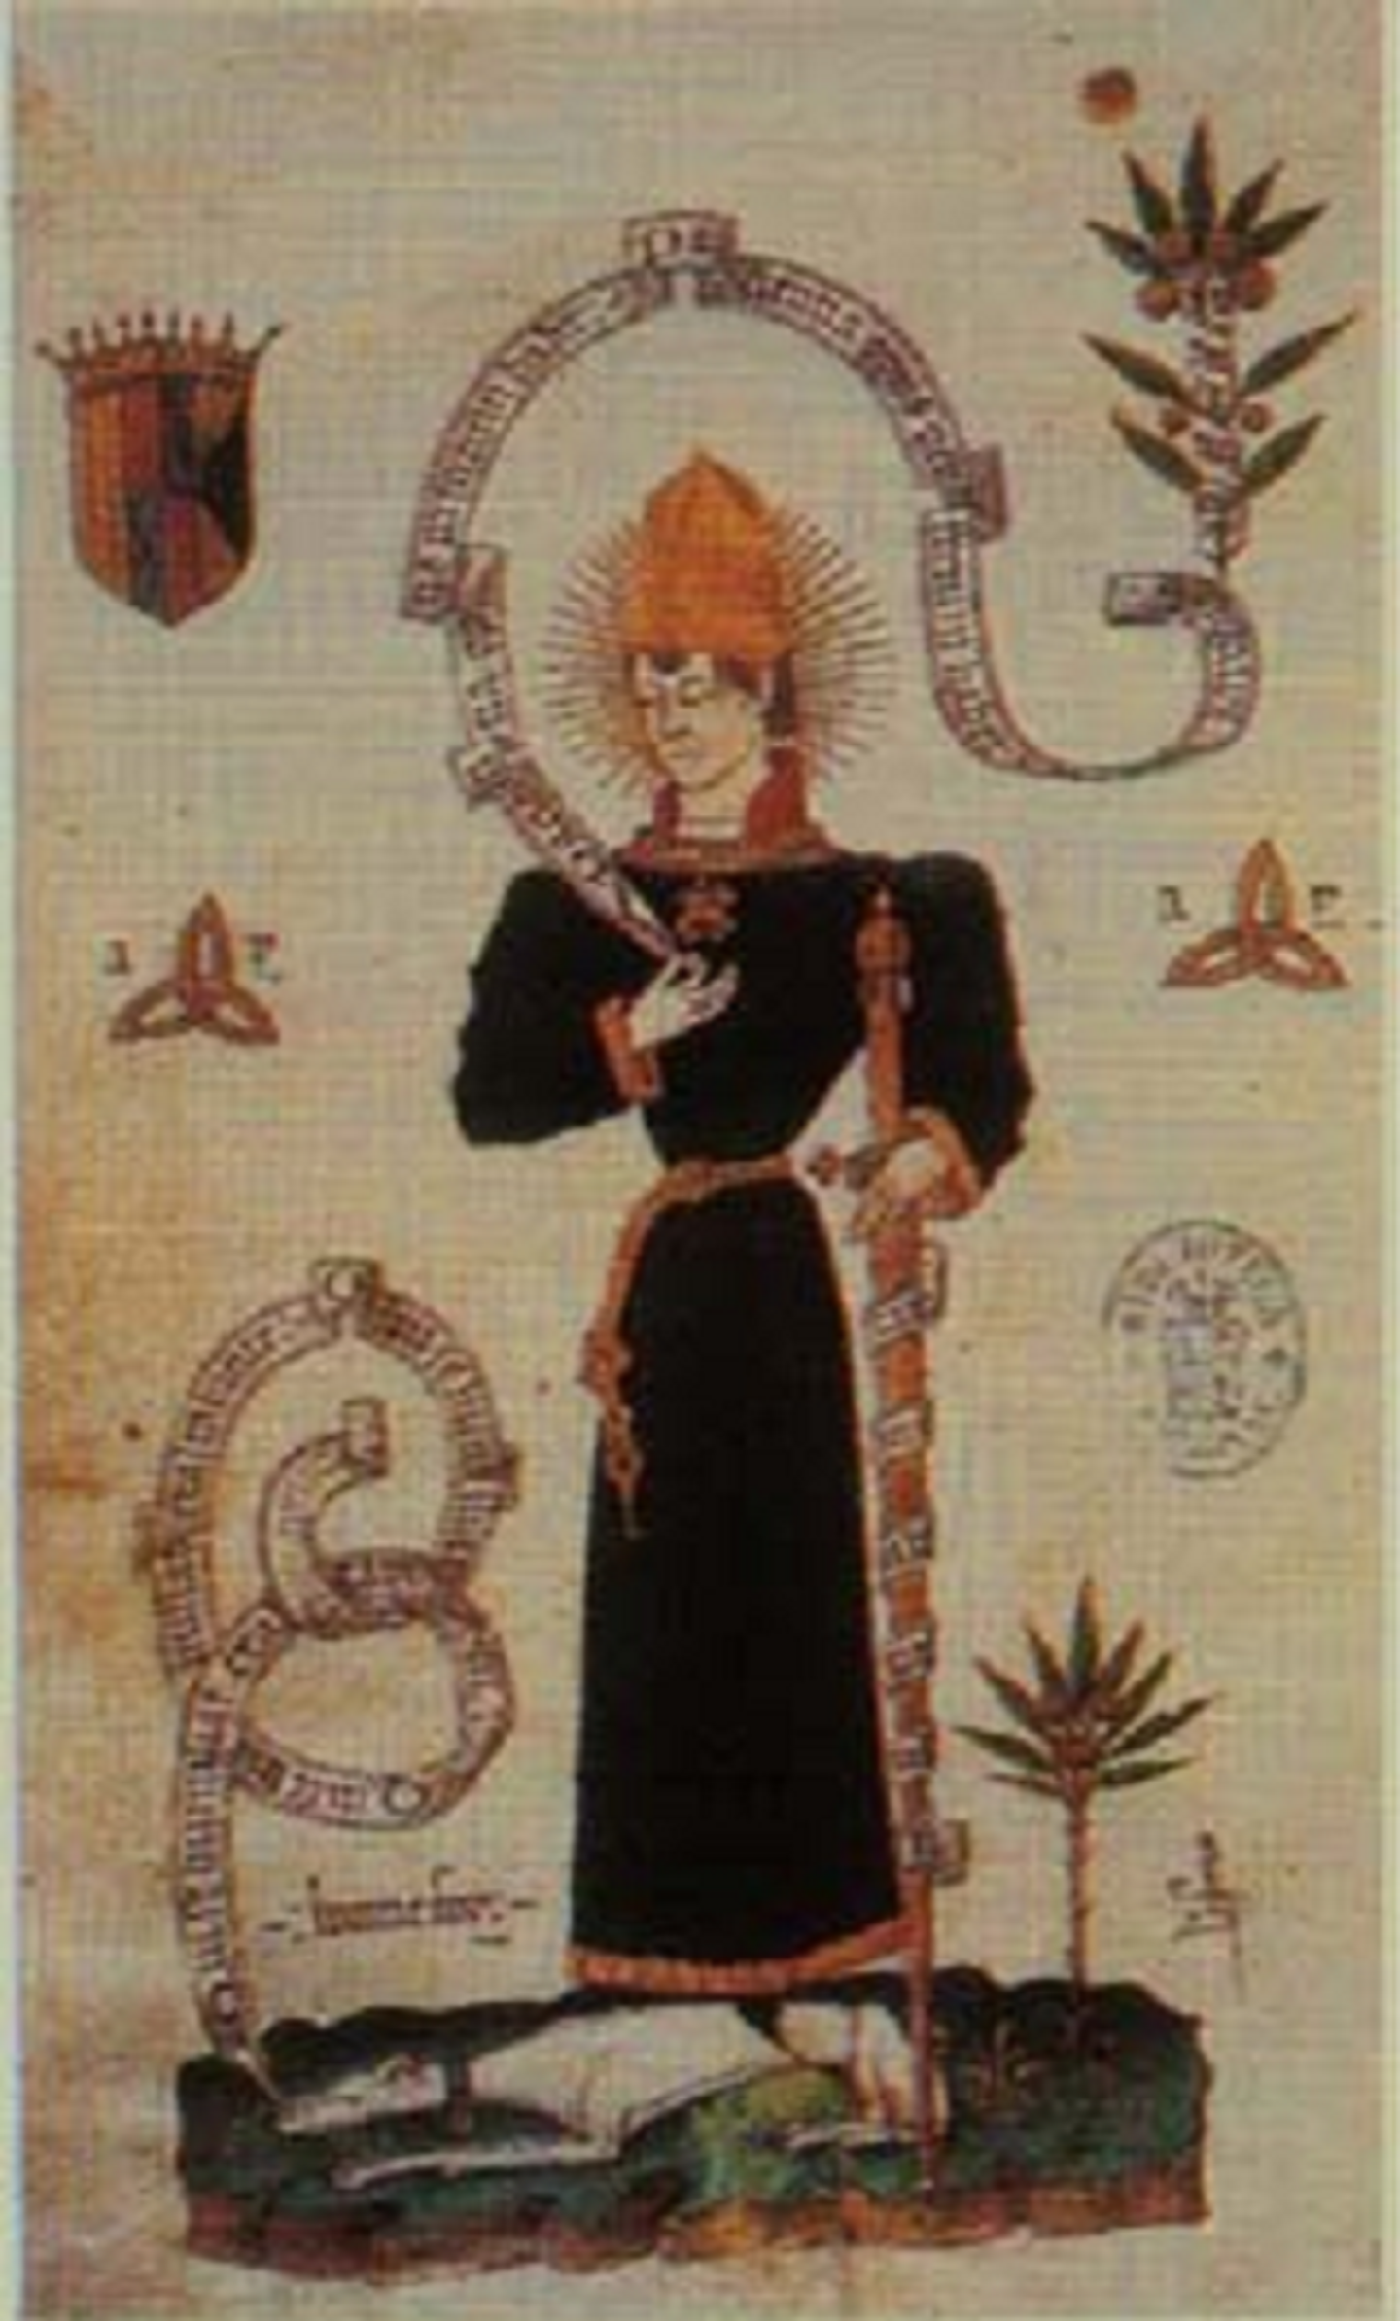 Neix Carles de Viana, que seria assassinat per coronar Ferran el Catòlic